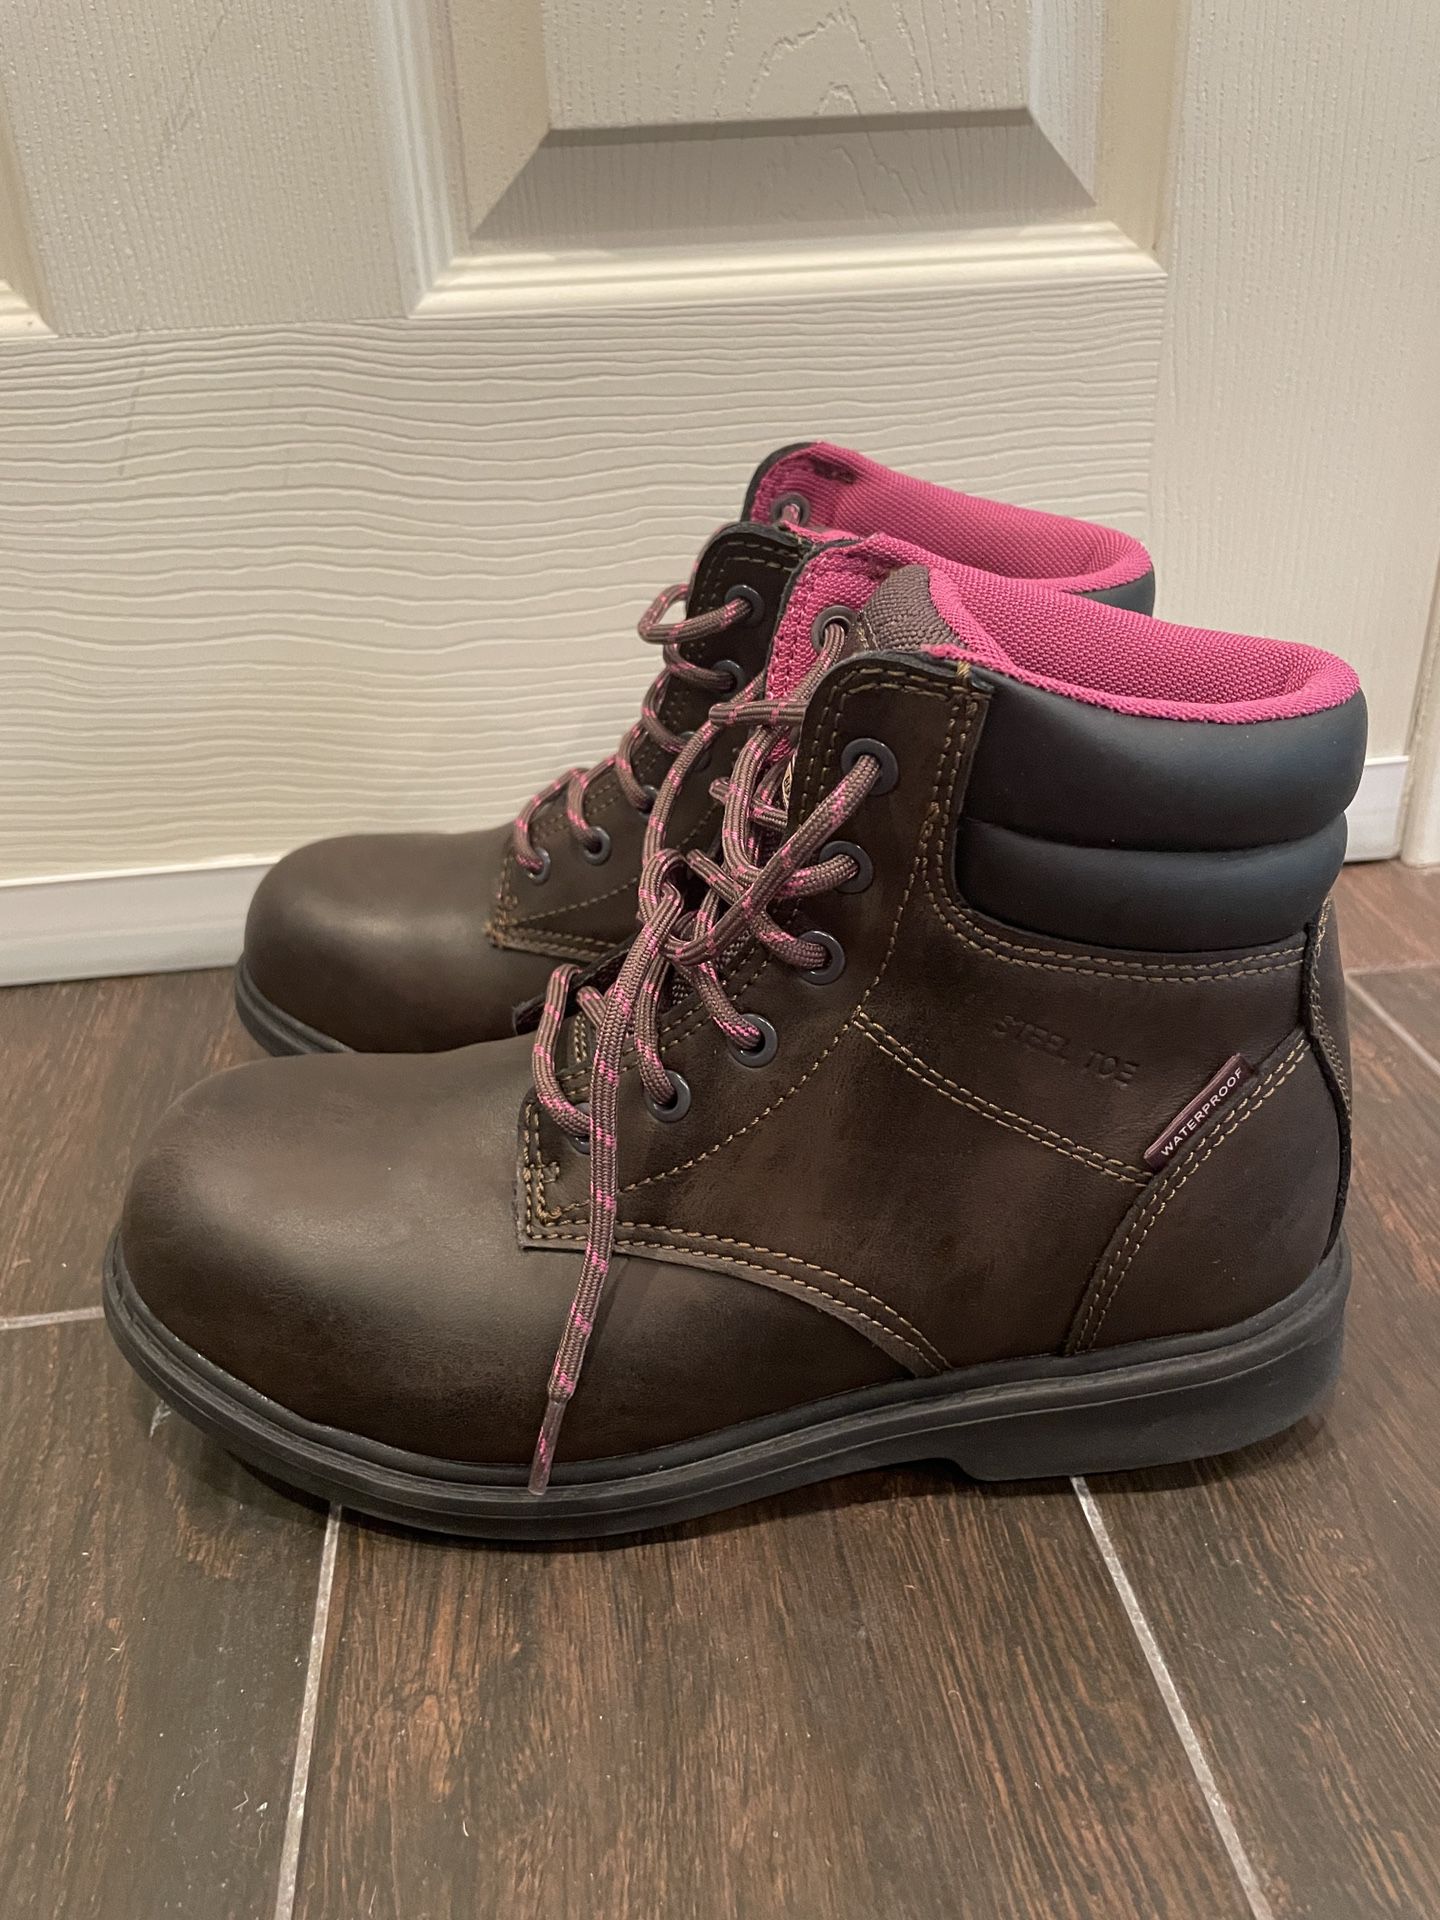 NEW Women’s Steel Toe Work Boots Size 7.5 